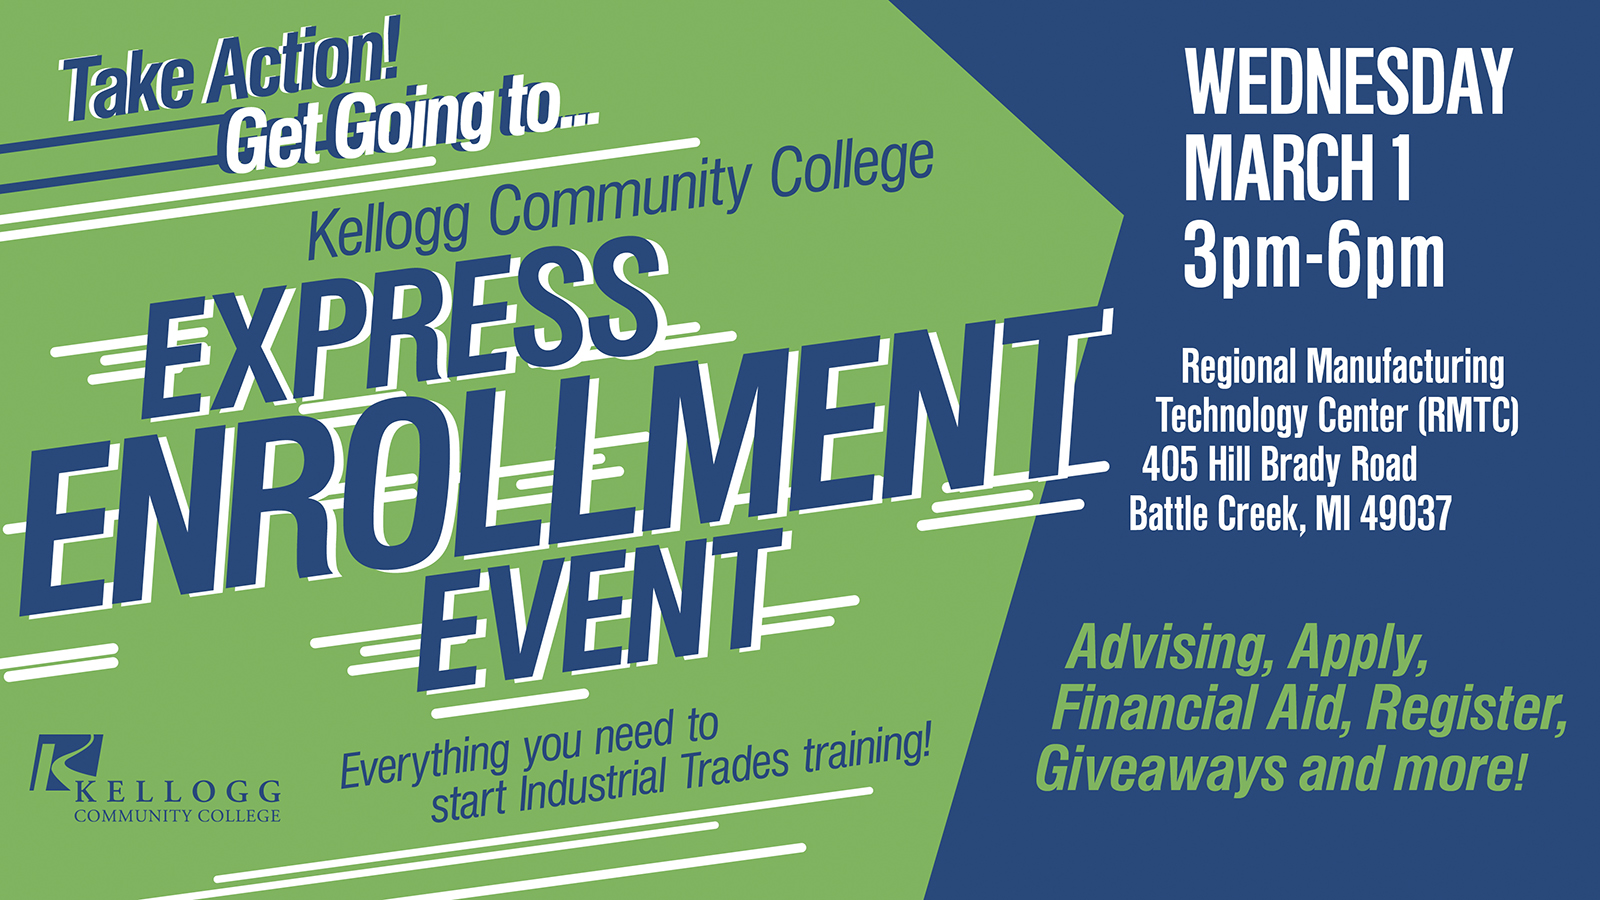 Express Enrollment Event to offer fasttrack services, giveaways at KCC